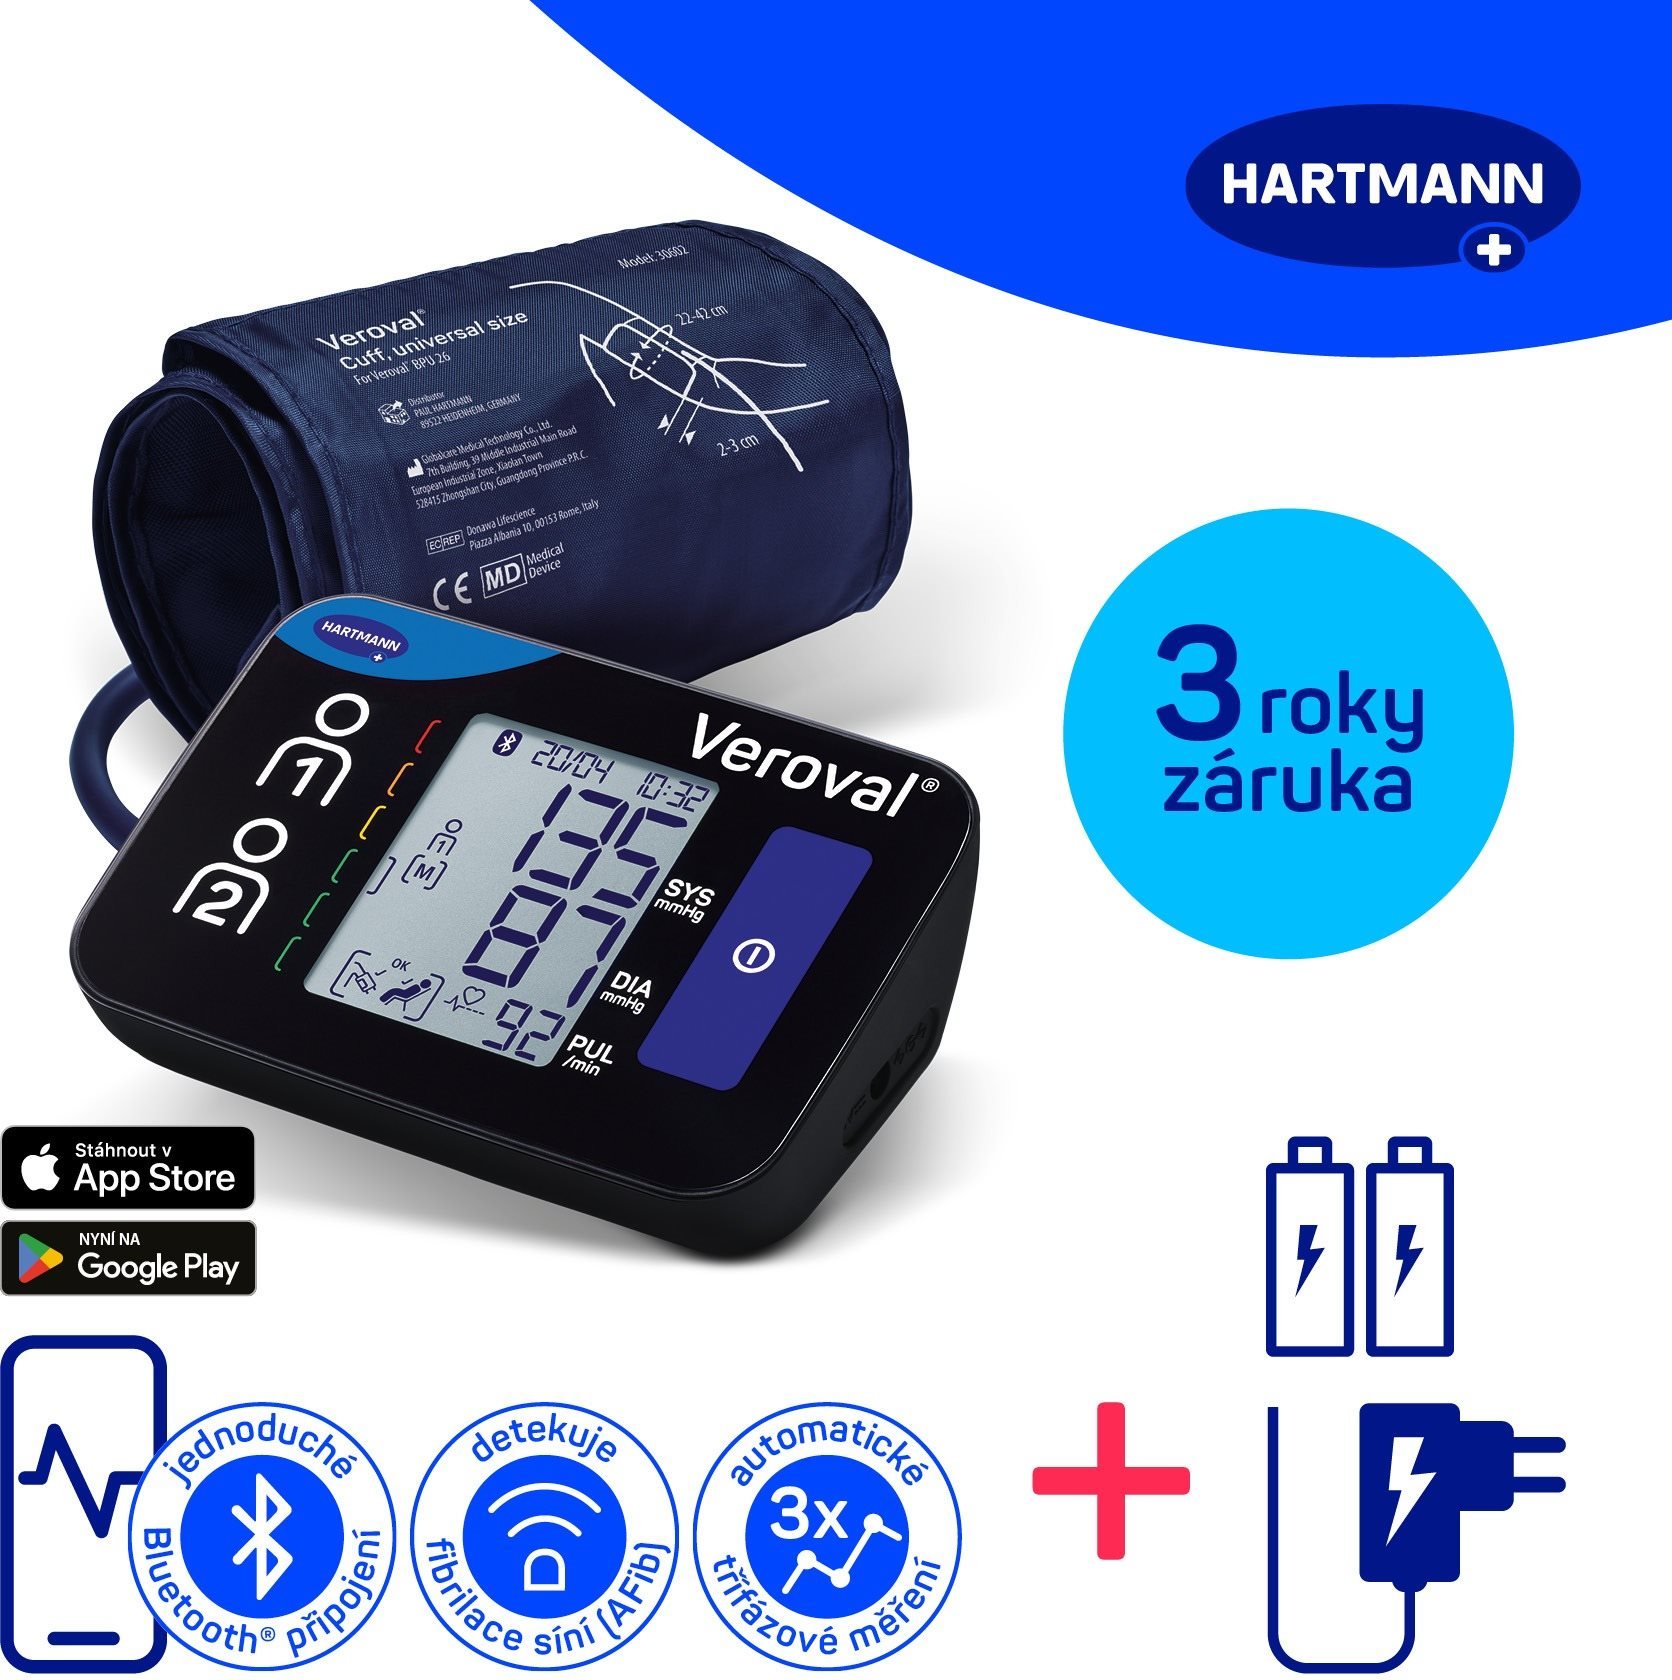 HARTMANN Veroval Compact + Connect, AFIB és Bluetooth csatlakozás + adapter (szett), 3 év garancia